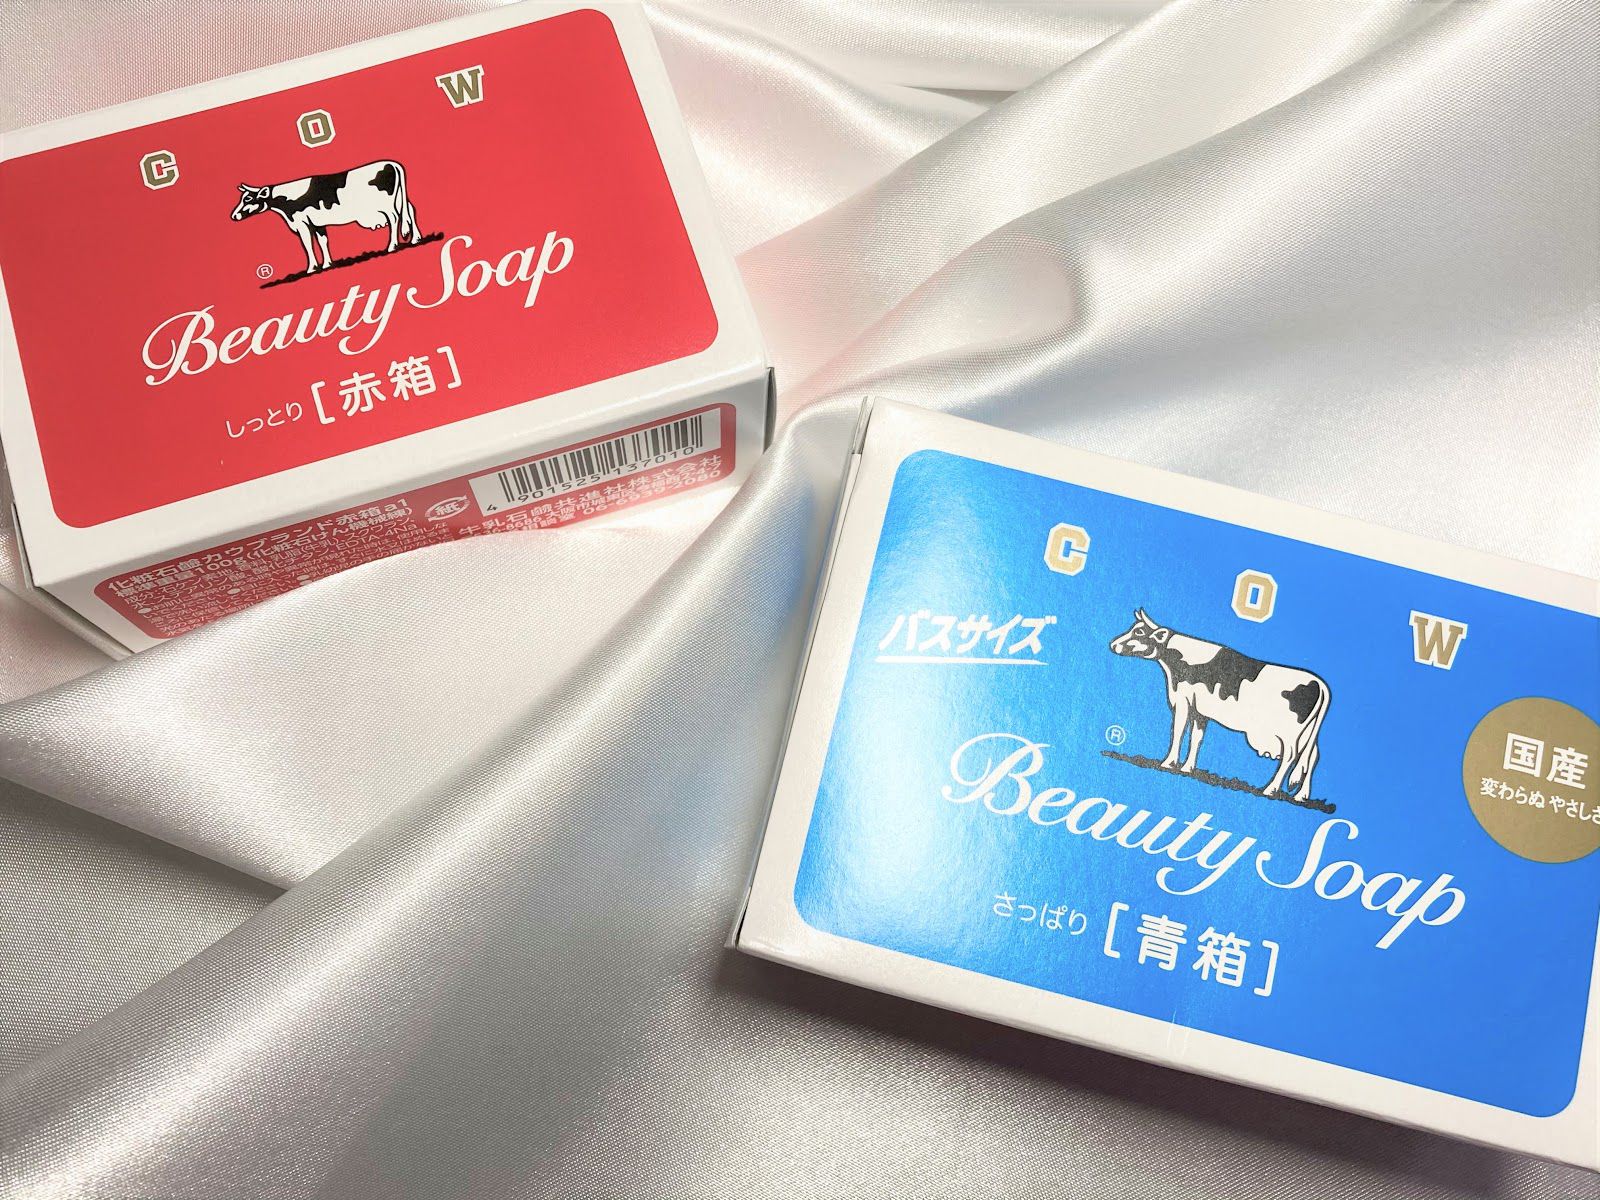 「牛乳石鹸」100円で洗顔はバッチリ。1年使って感じた赤箱と青箱の違い